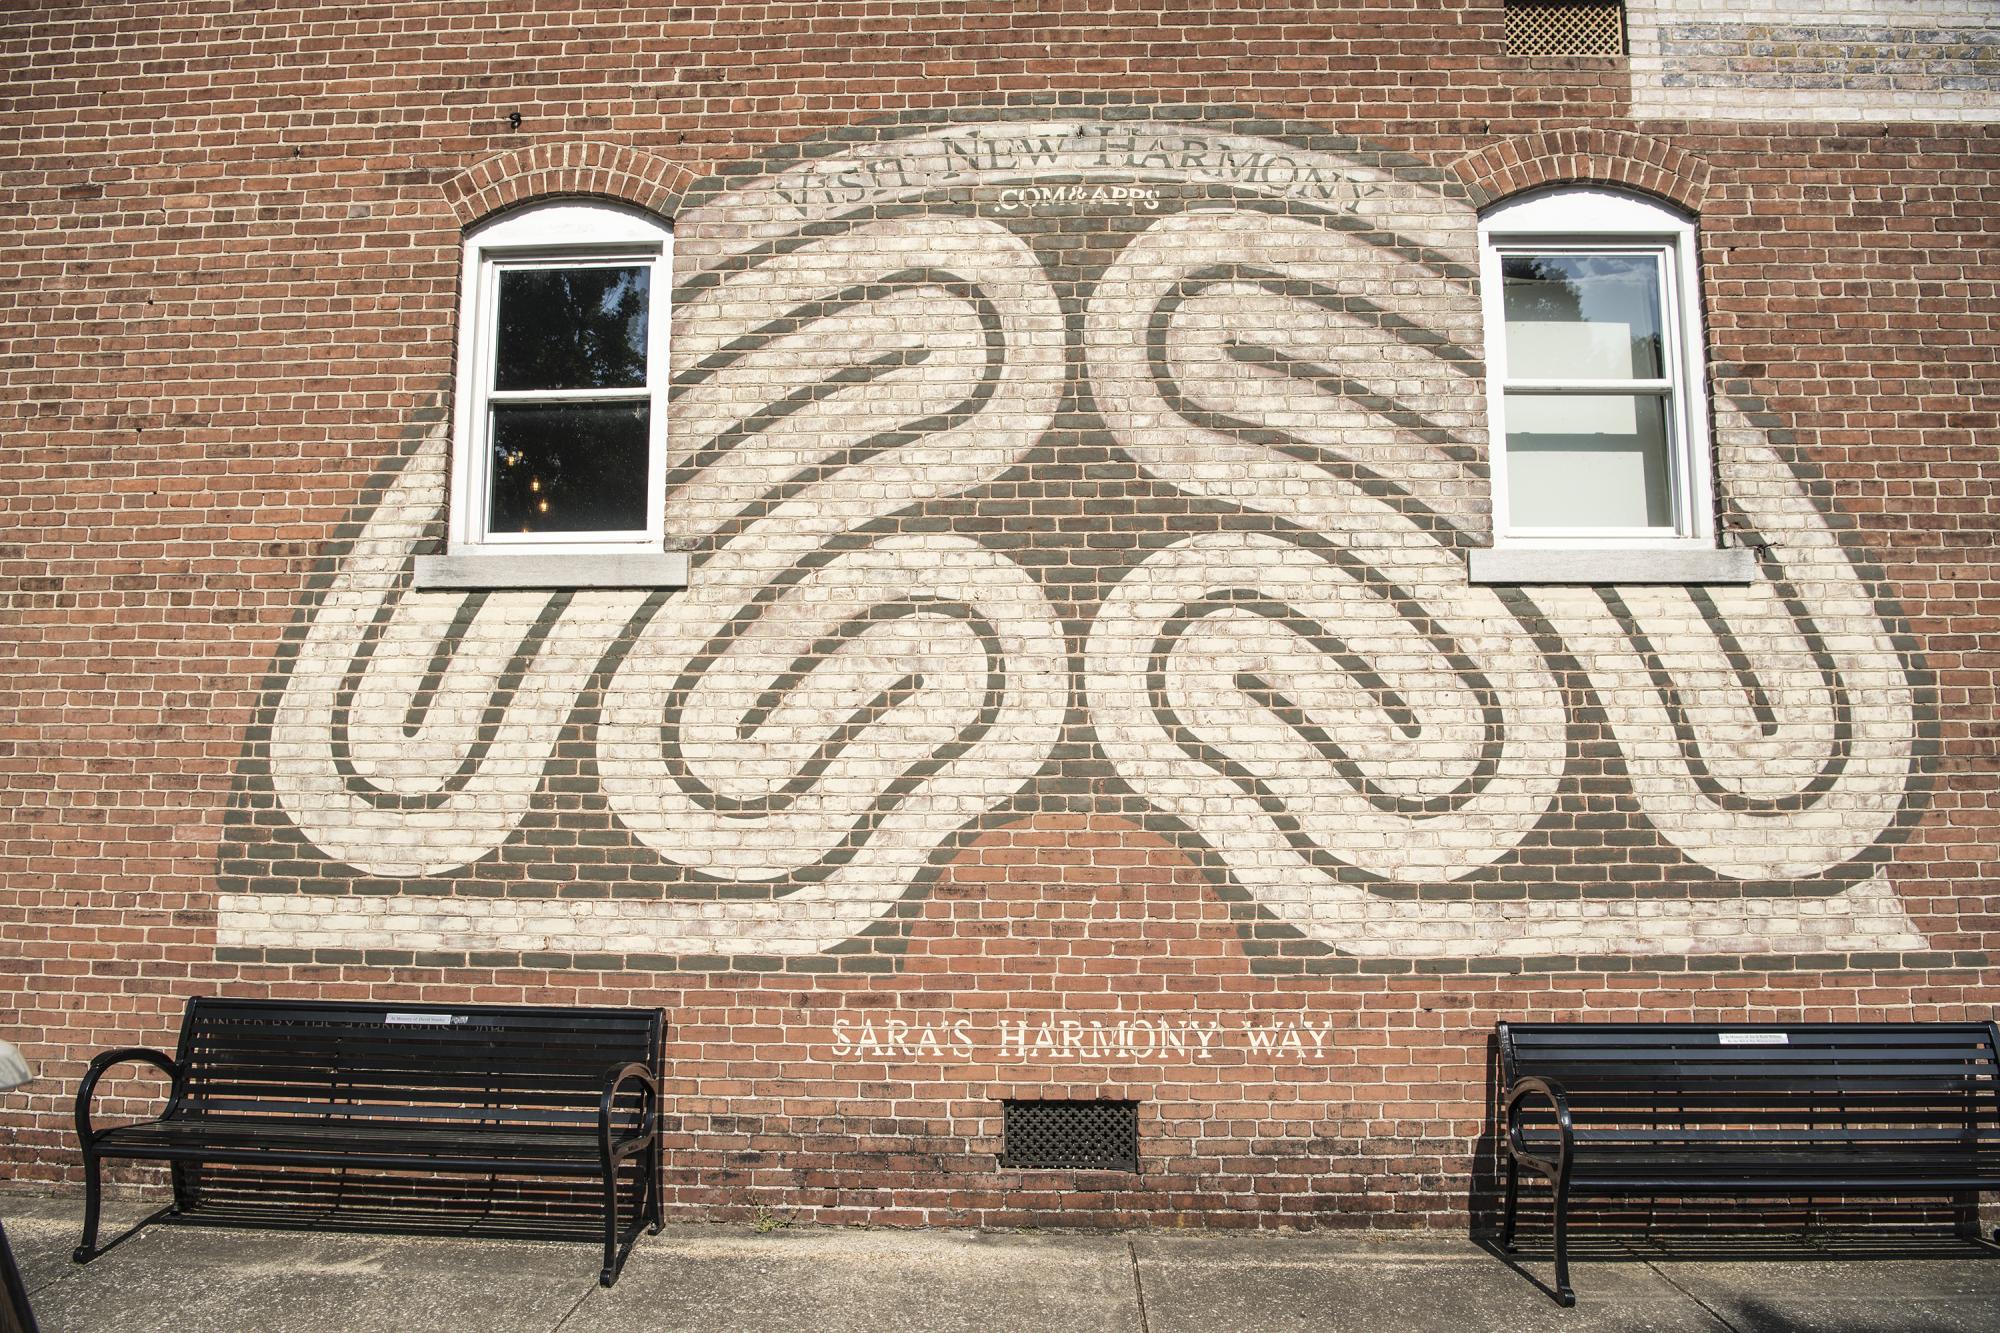 New Harmony Indiana - Sara's Harmony Way Mural